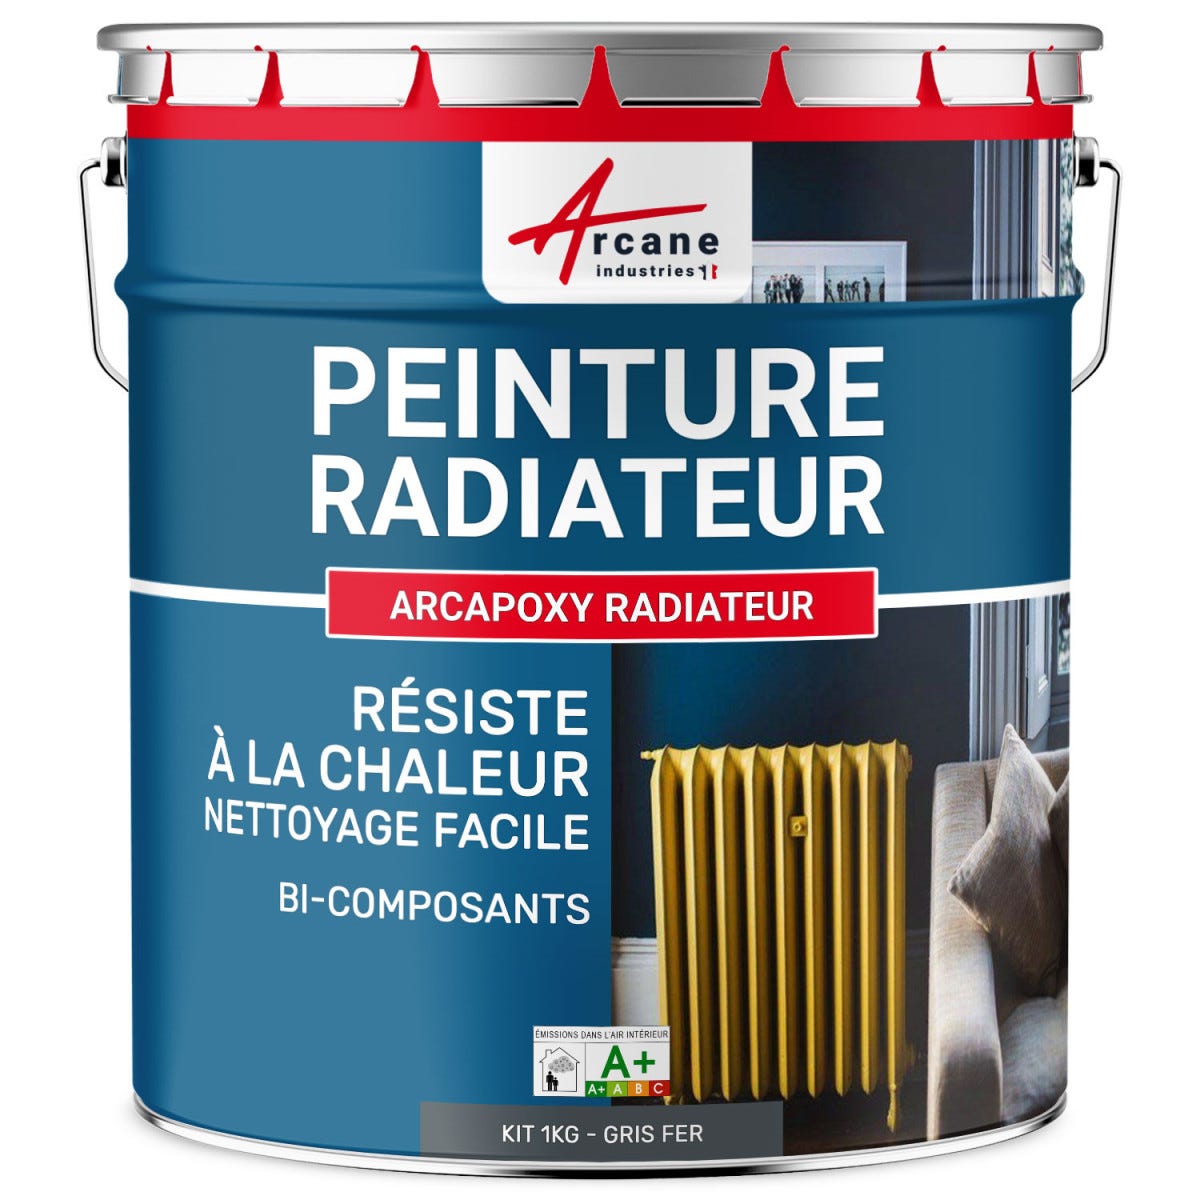 Peinture Radiateur fonte acier alu - PEINTURE RADIATEUR - 1 kg (jusqu'à 5 m² en 2 couches) - Gris fer - RAL 7011 - ARCANE INDUSTRIES 6